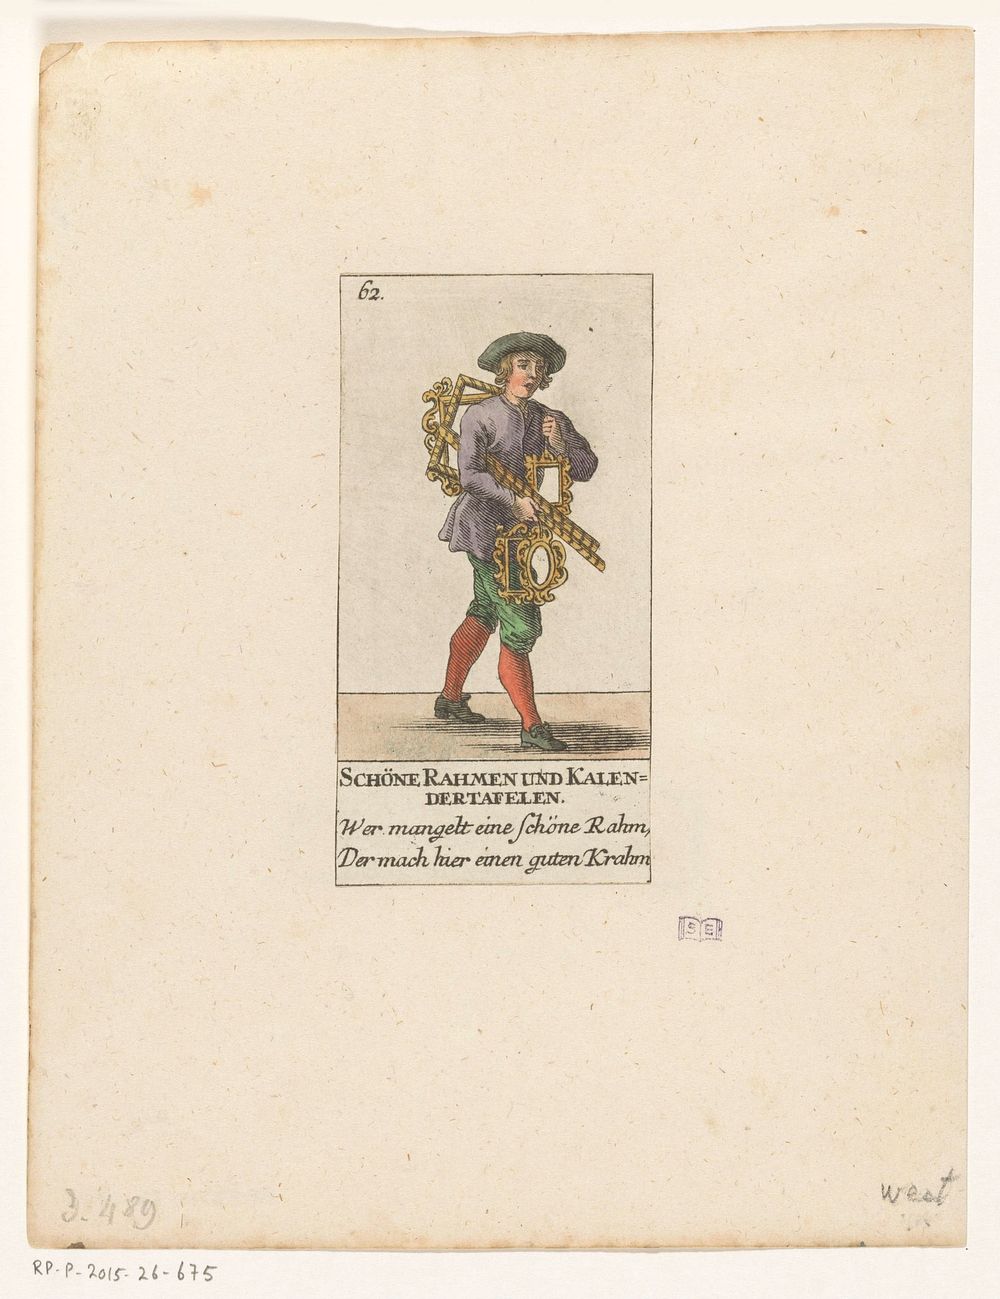 Verkoper van lijsten (1749) by David Herrliberger and David Herrliberger